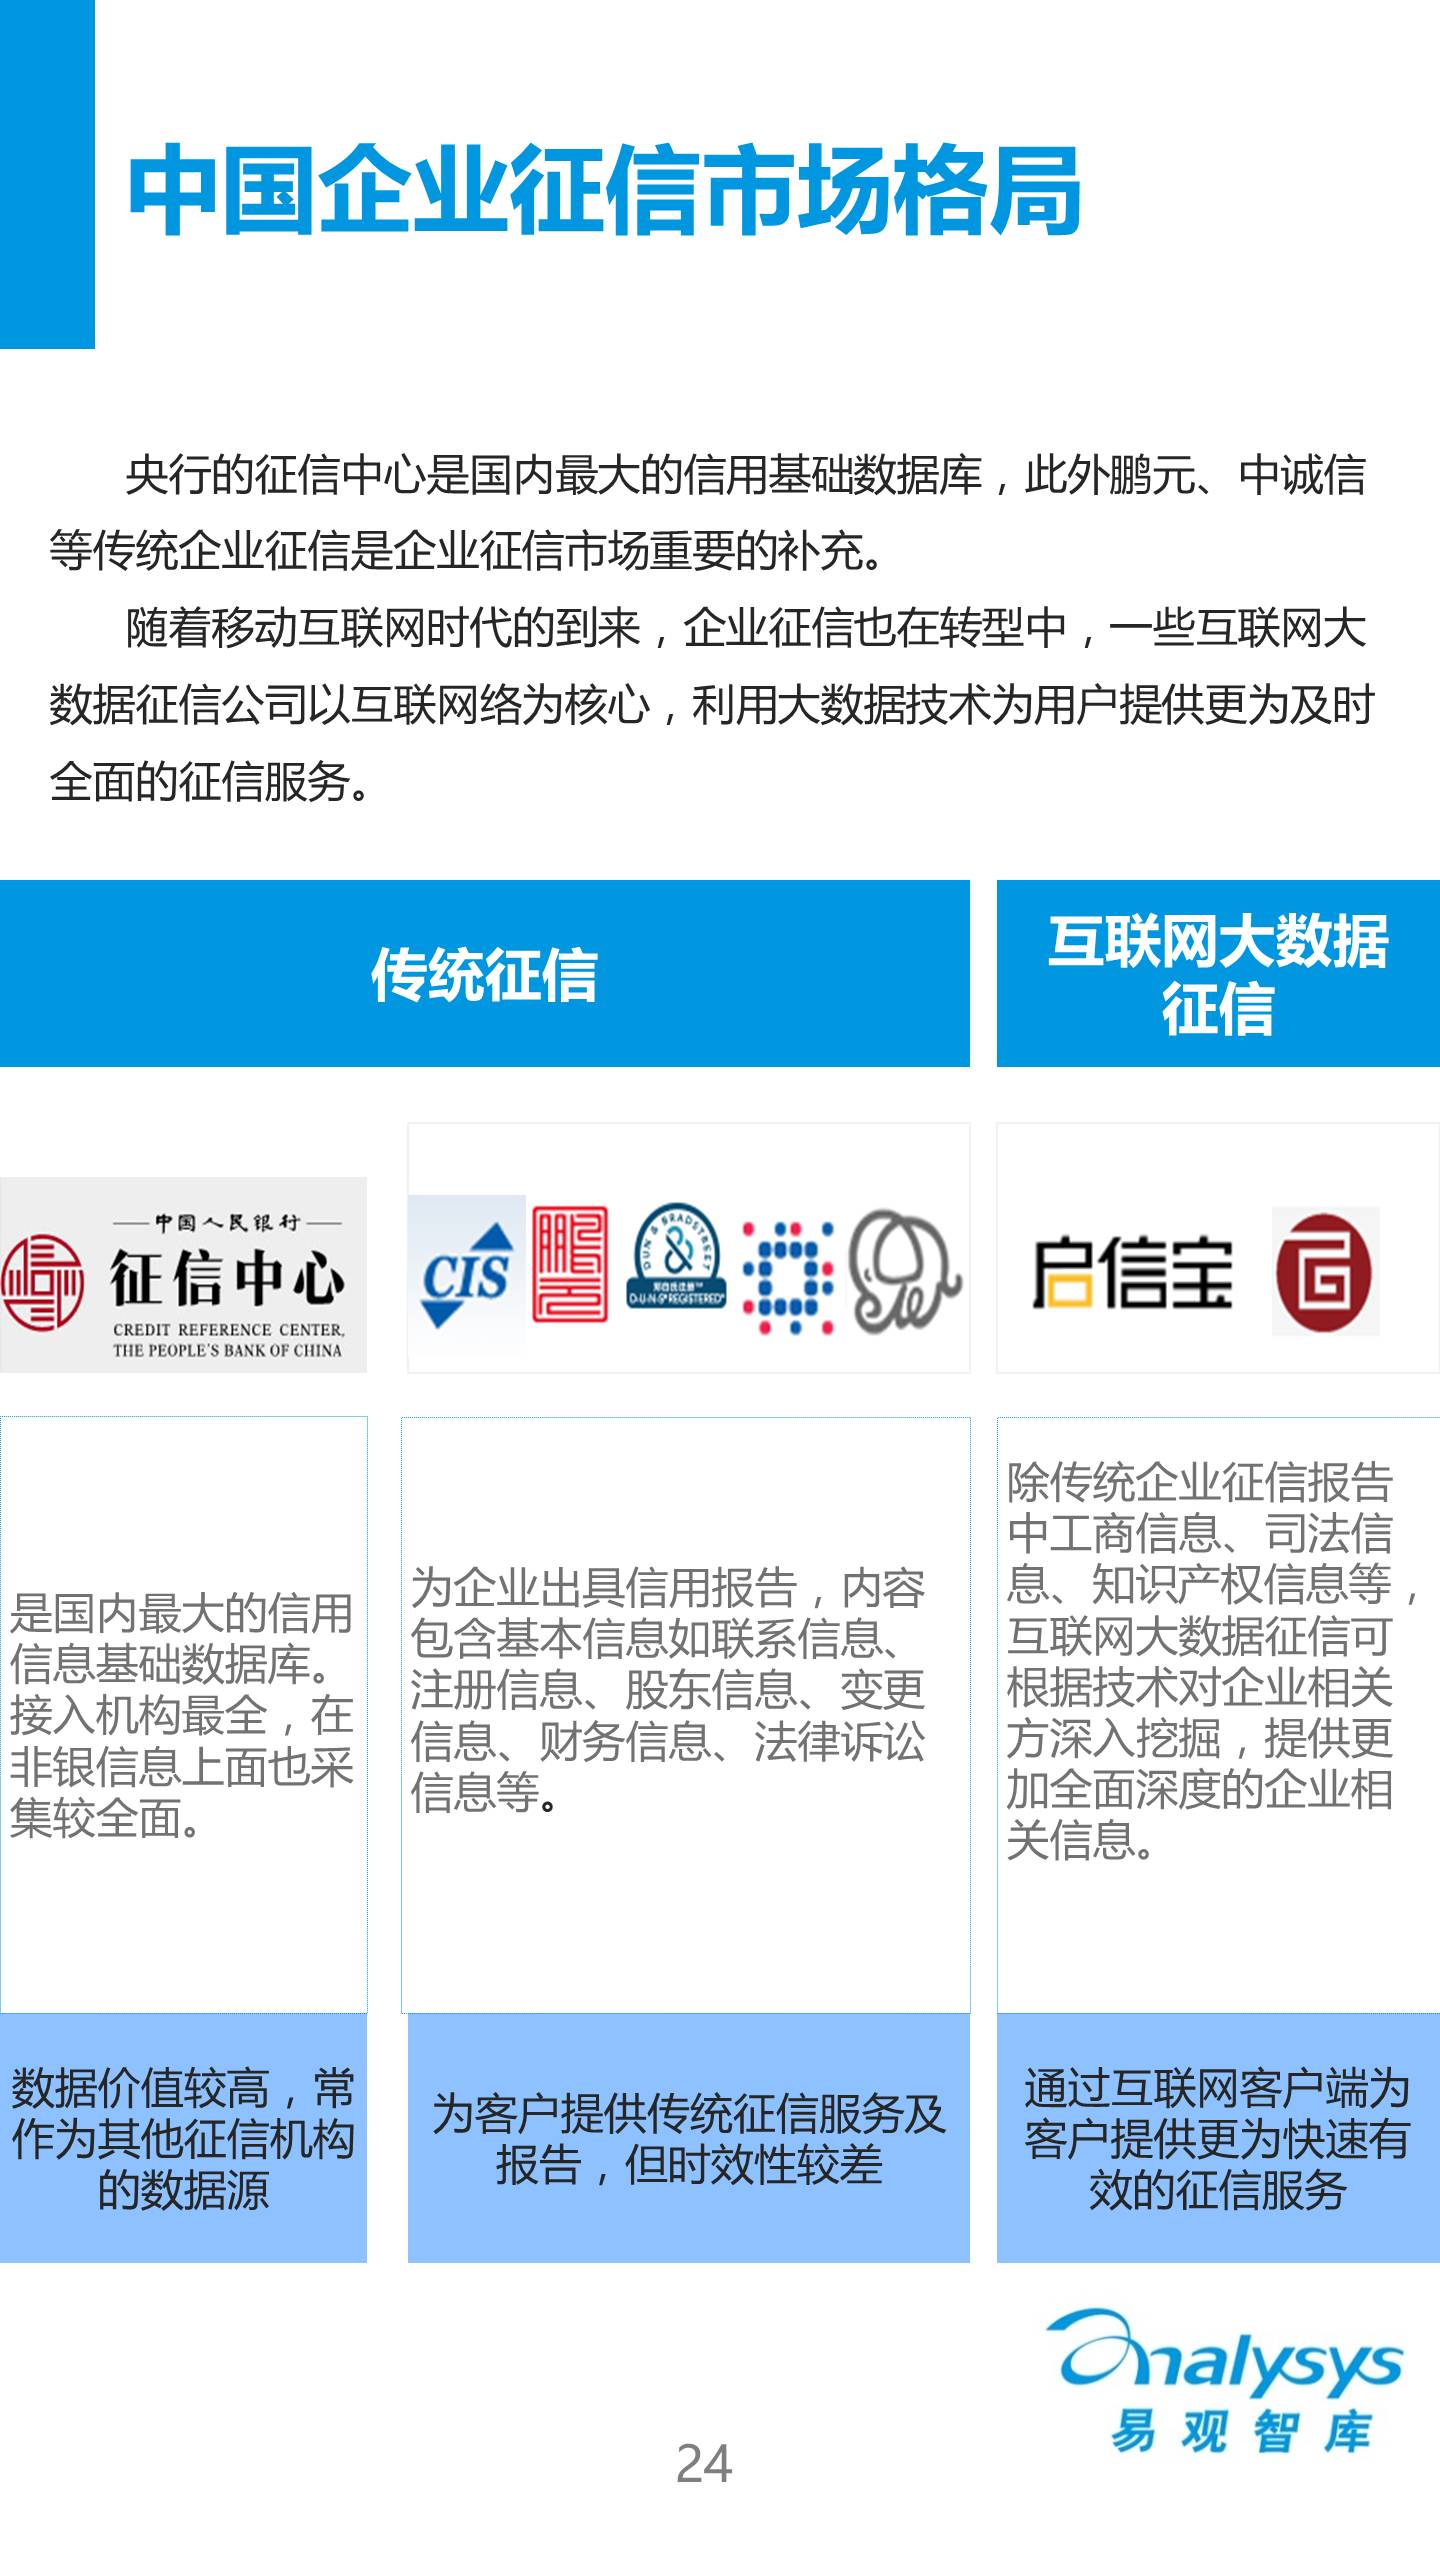 中国征信行业专题研究报告2016 